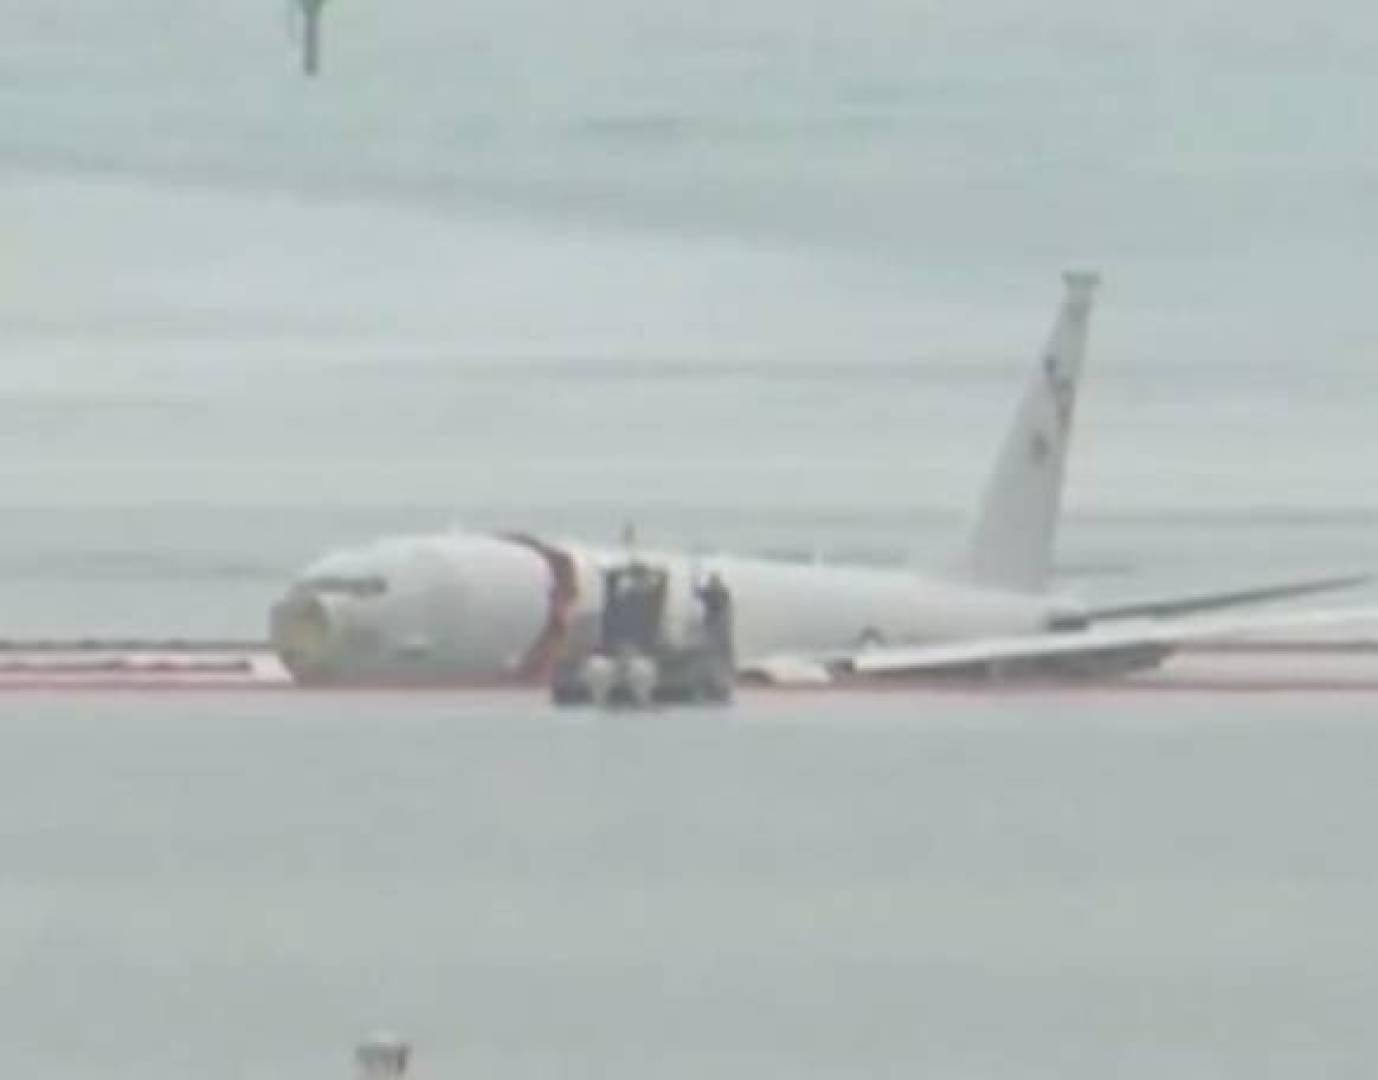 طائرة Boeing P8 Poseidon تابعة للبحرية الأمريكية انزلقت عن المدرج في هاواي وسقطت في الماء